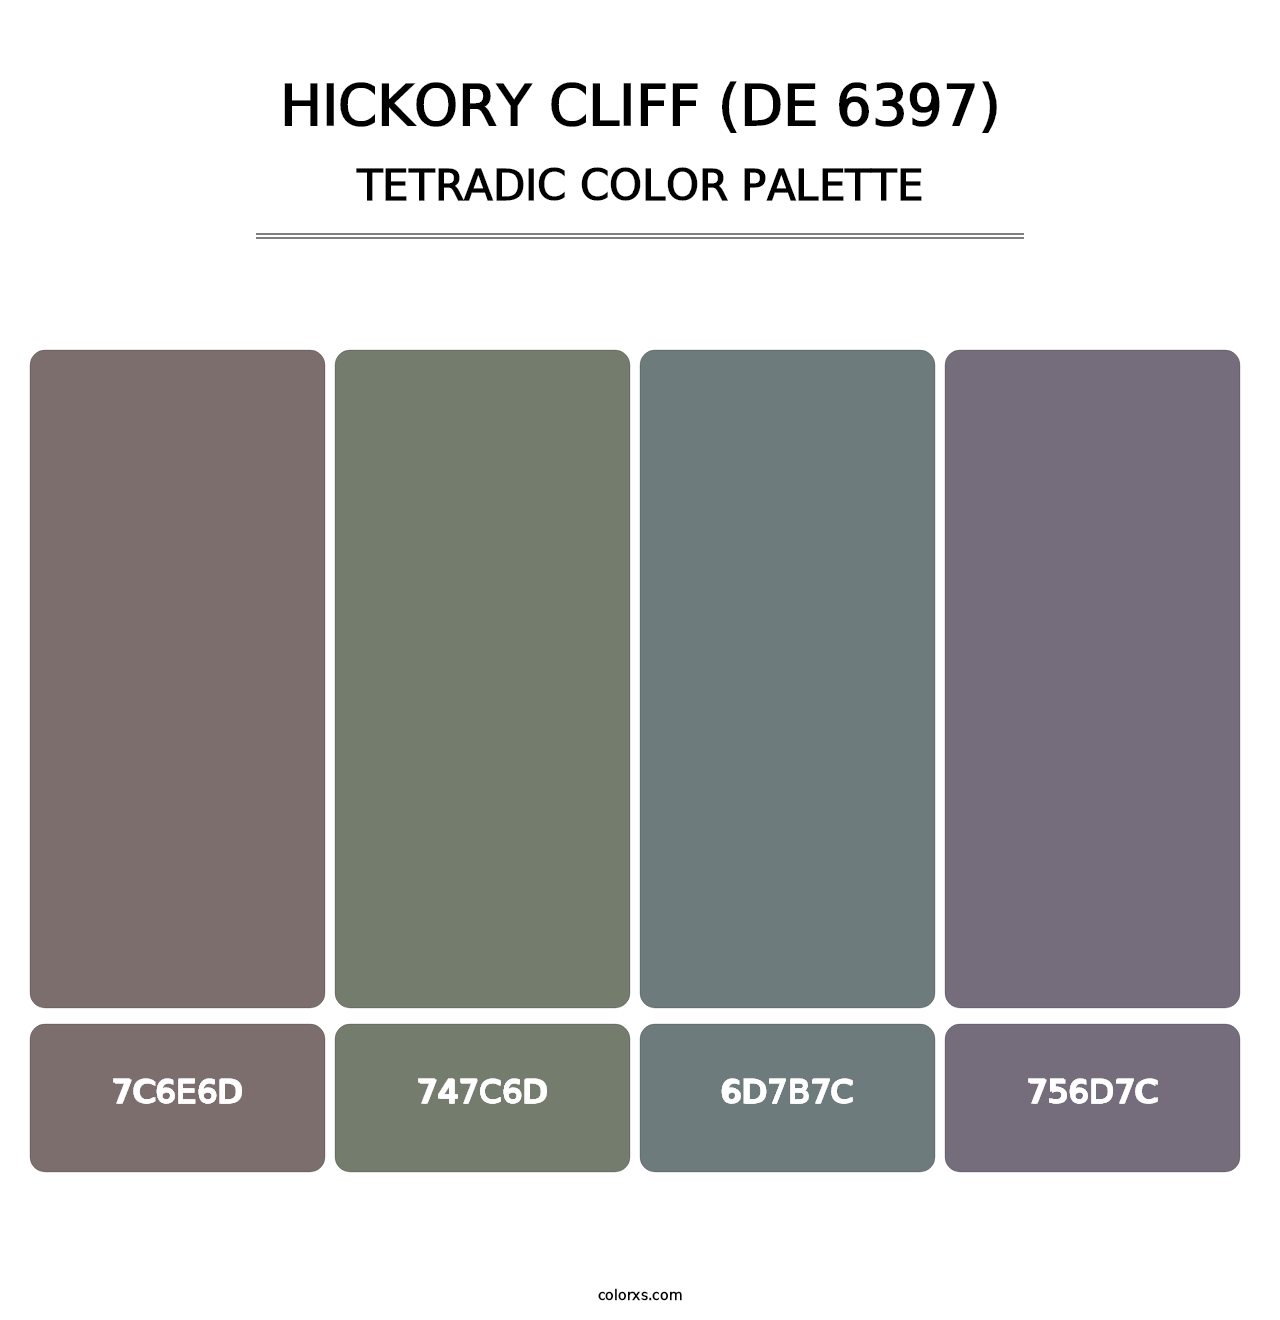 Hickory Cliff (DE 6397) - Tetradic Color Palette